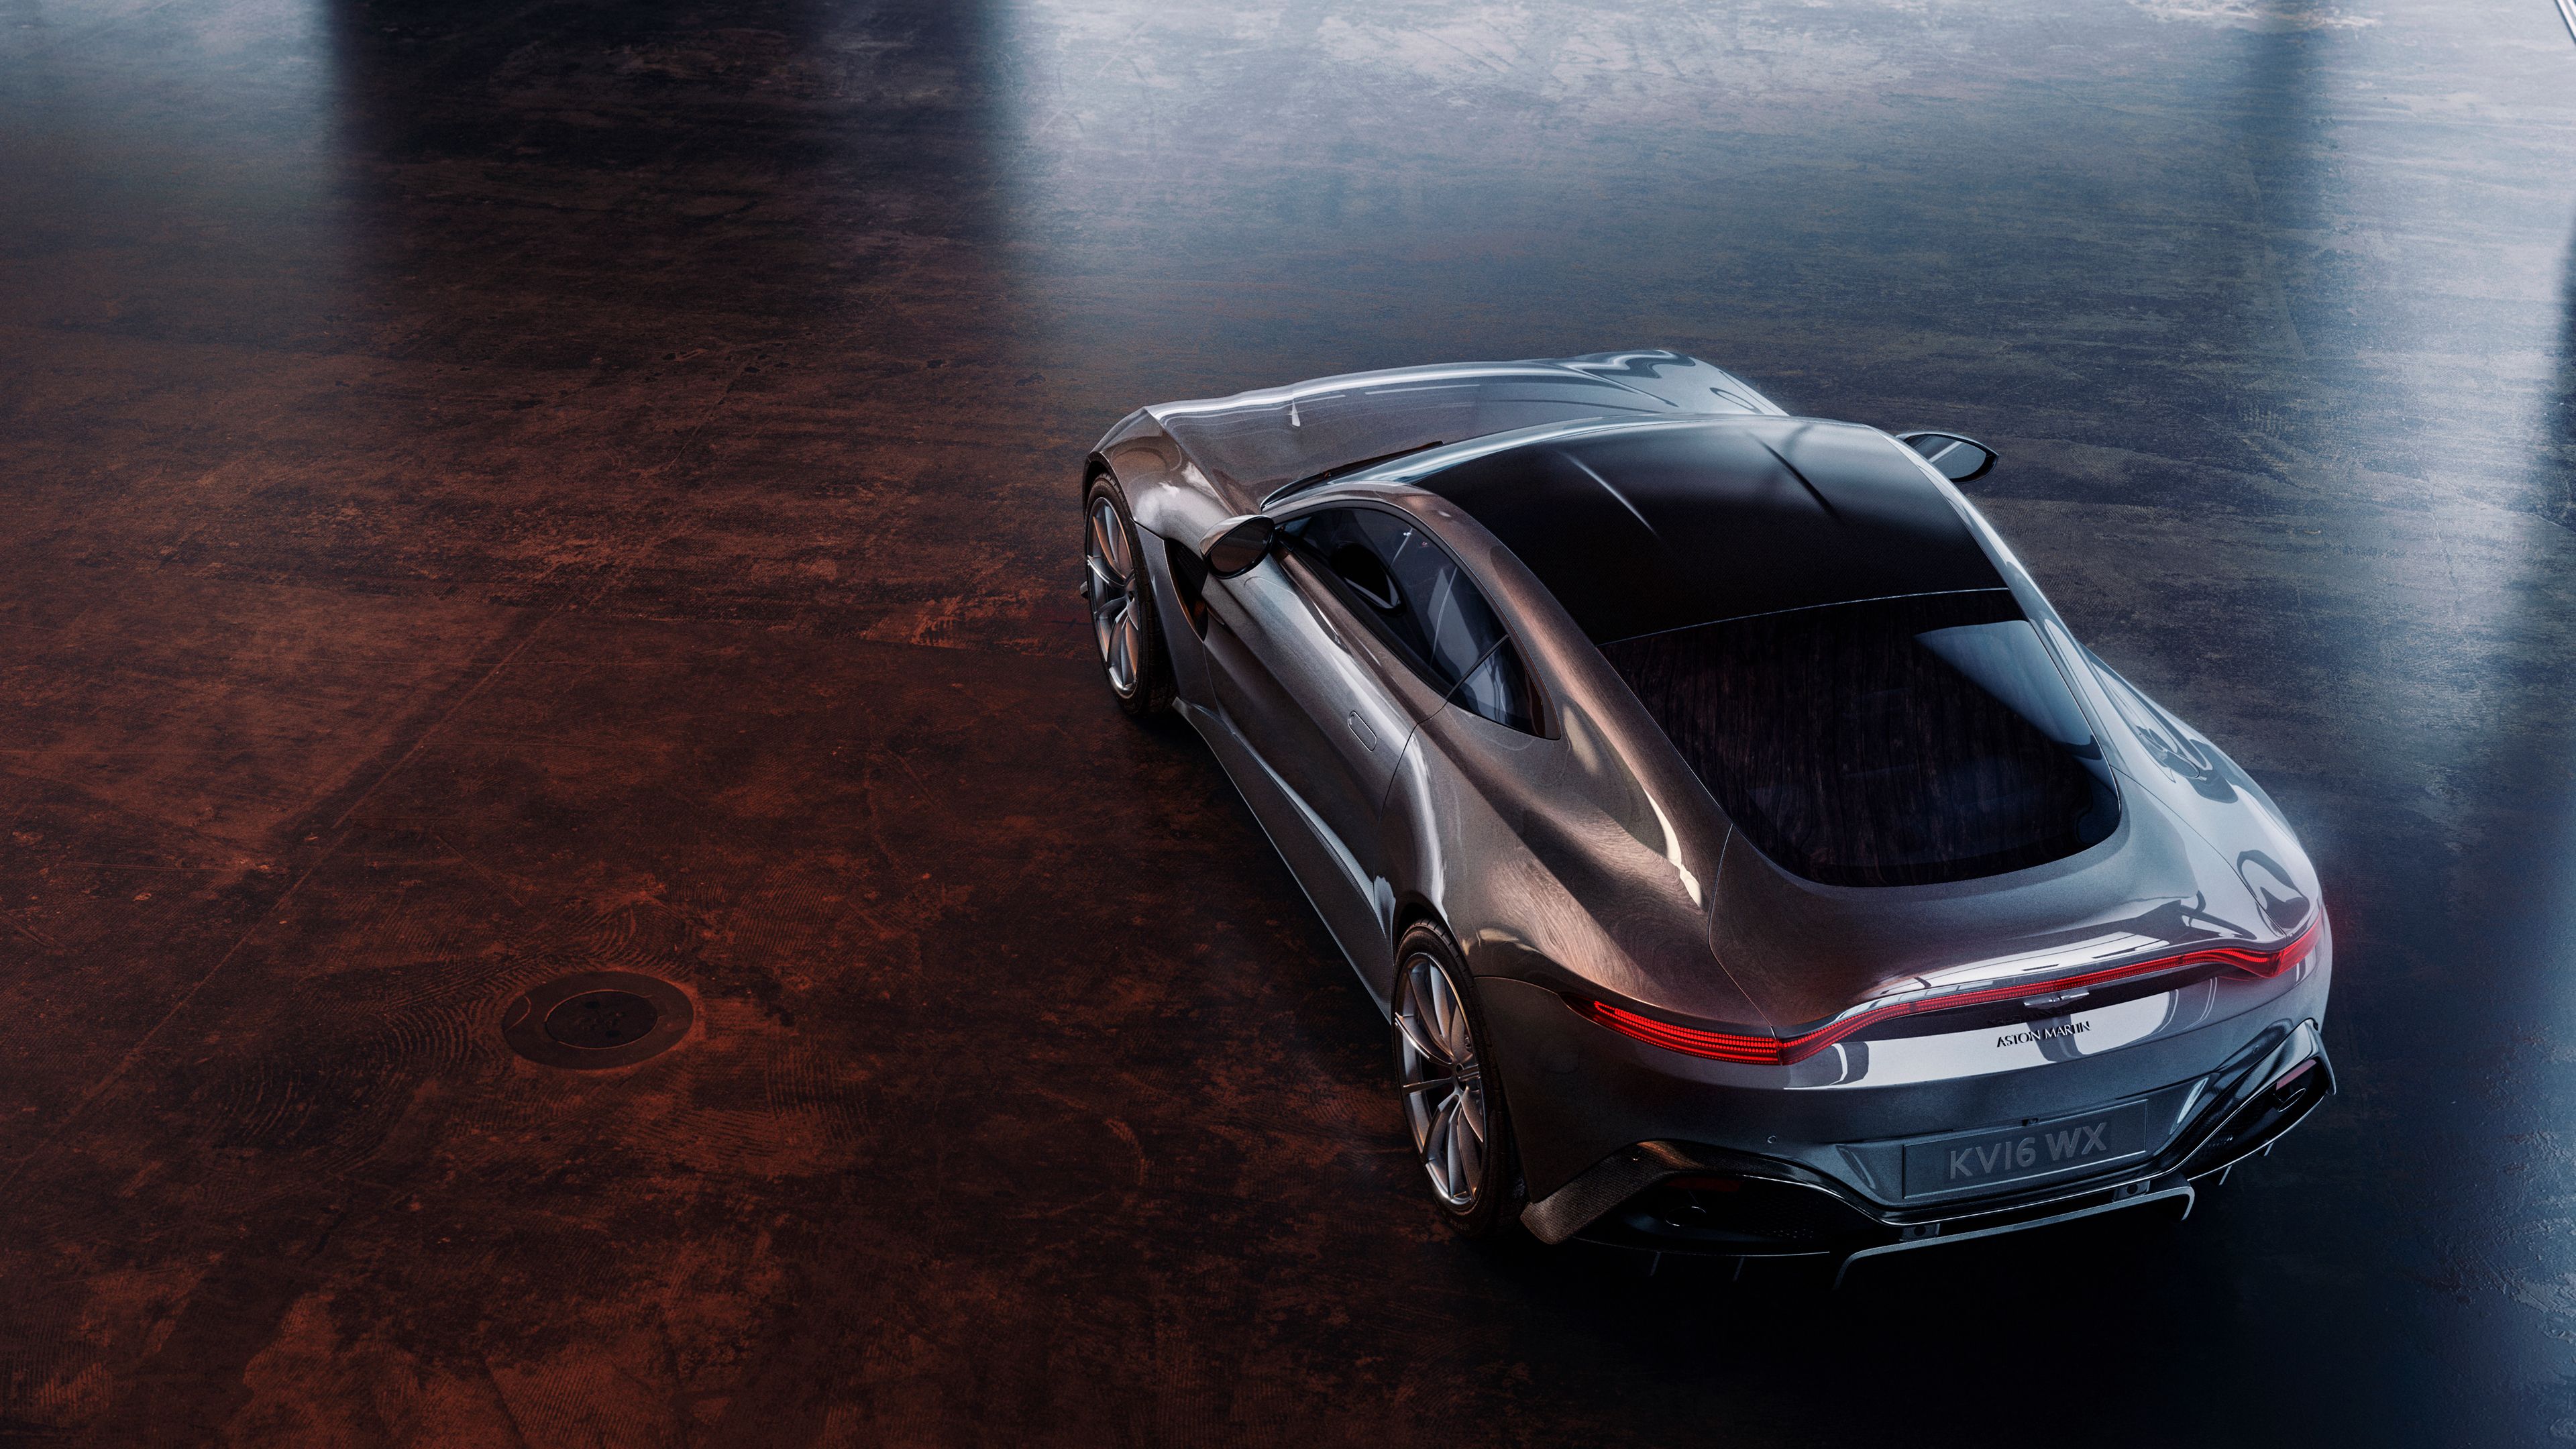 Fondos de pantalla 4k Aston Martin Vantage Upper View 2019 autos fondos de pantalla